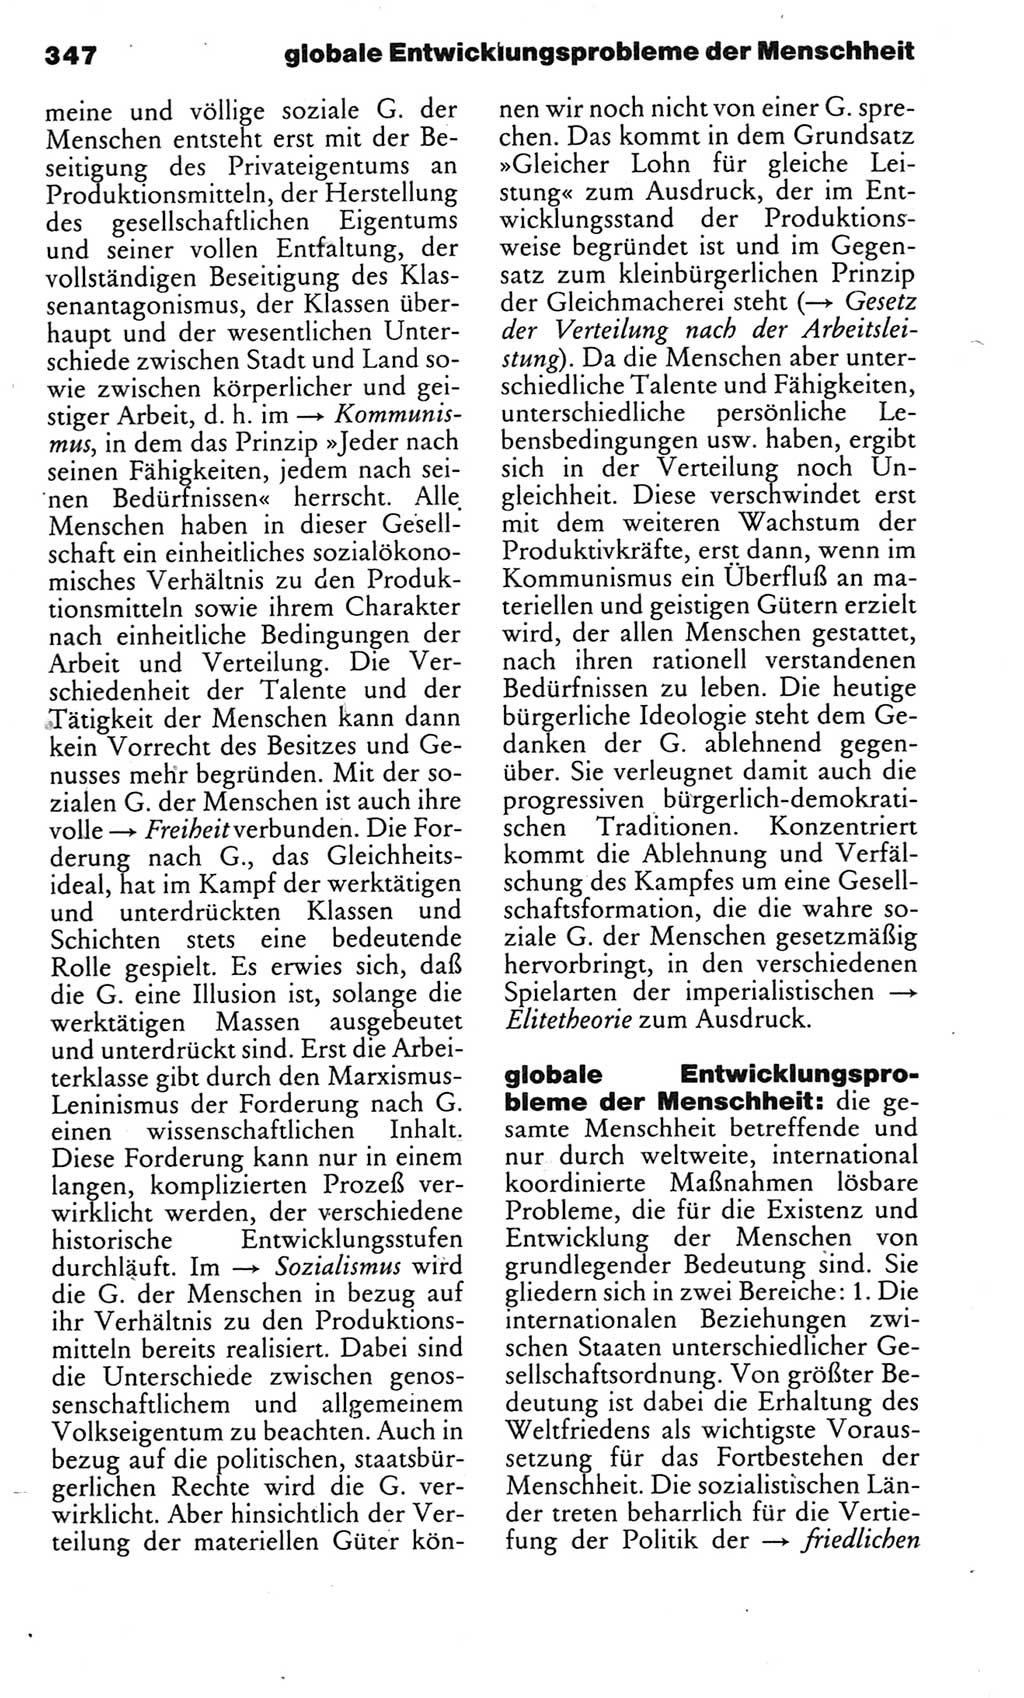 Kleines politisches Wörterbuch [Deutsche Demokratische Republik (DDR)] 1983, Seite 347 (Kl. pol. Wb. DDR 1983, S. 347)